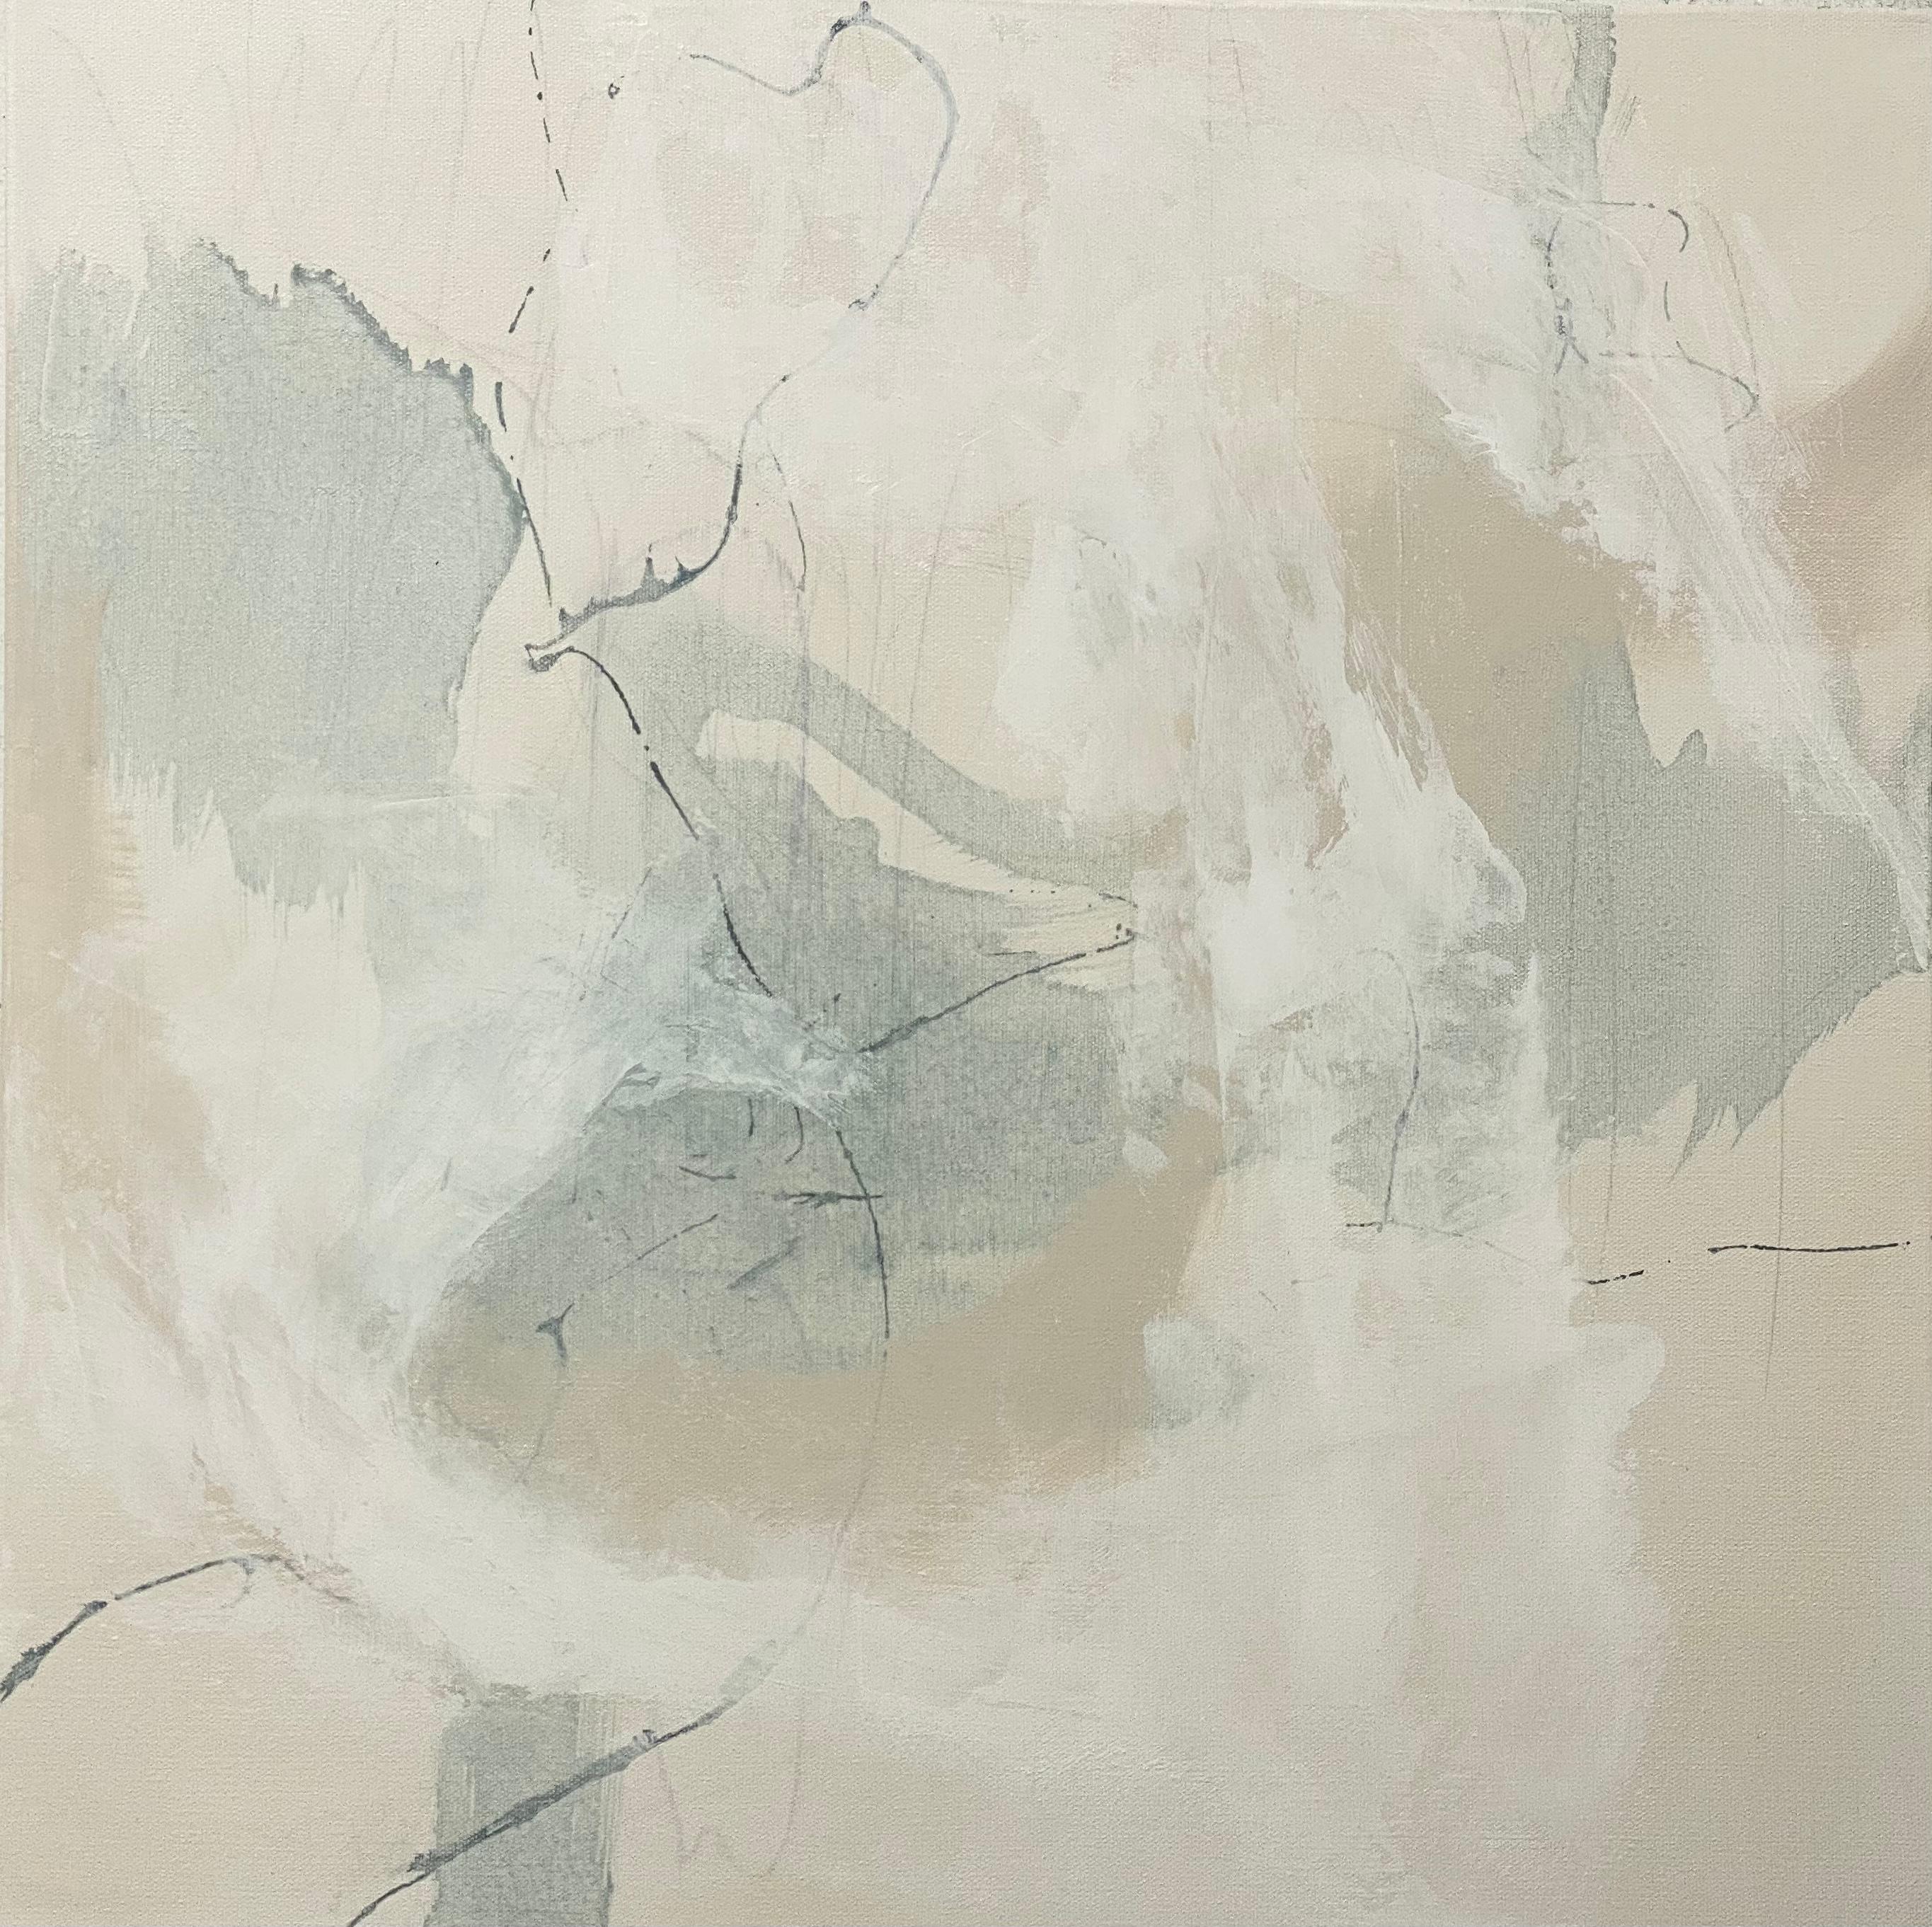 Abstract Painting de Juanita Bellavance  - Articulate 6, abstracto contemporáneo, neutro, seafoam, bronceado, blanco 24x24 pulgadas